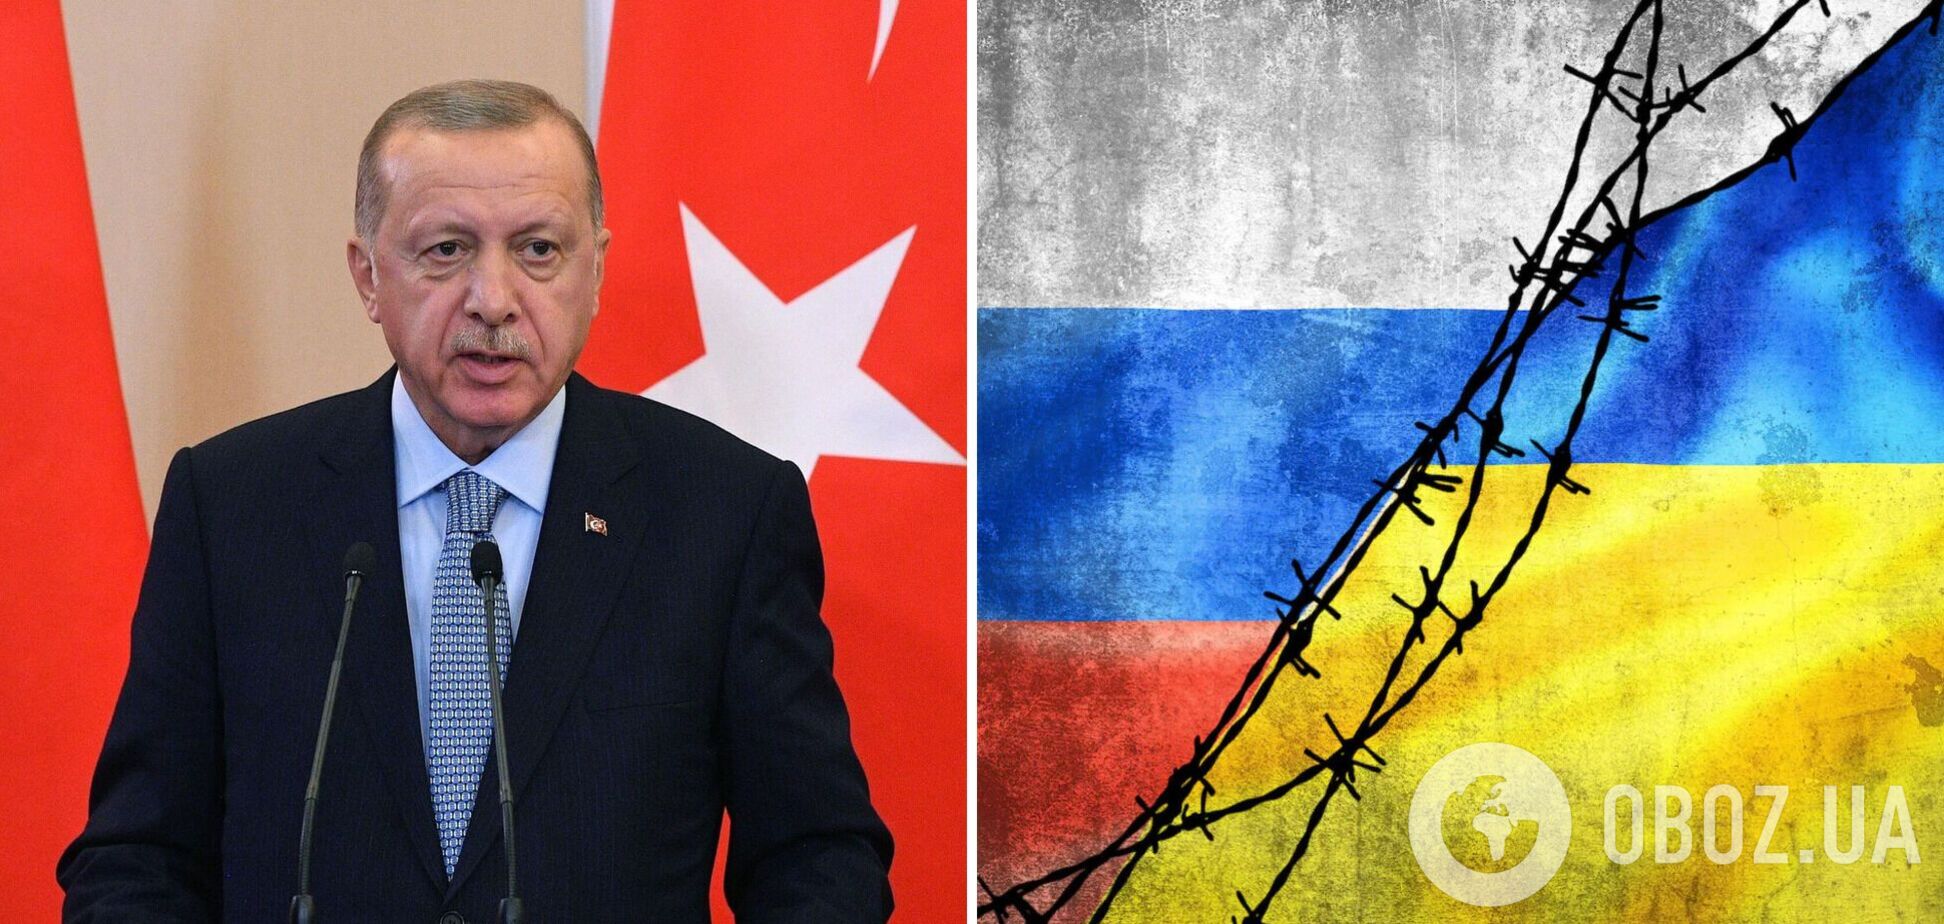 Эрдоган: война в Украине должна завершиться мирными переговорами на основе территориальной целостности страны 